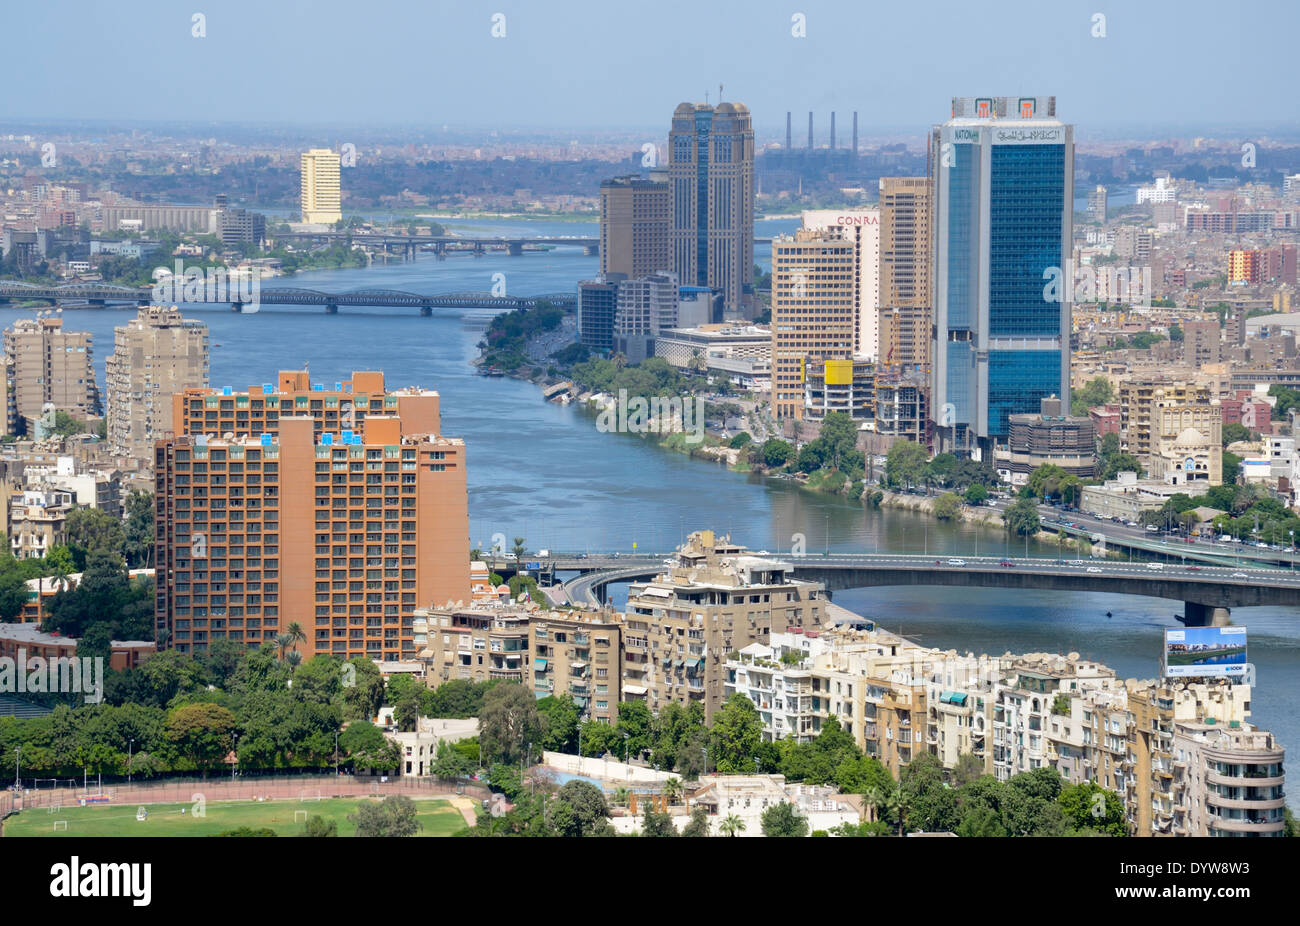 Il fiume Nilo che scorre attraverso il centro de Il Cairo andando verso nord. Fotografie di Barry Iverson Foto Stock